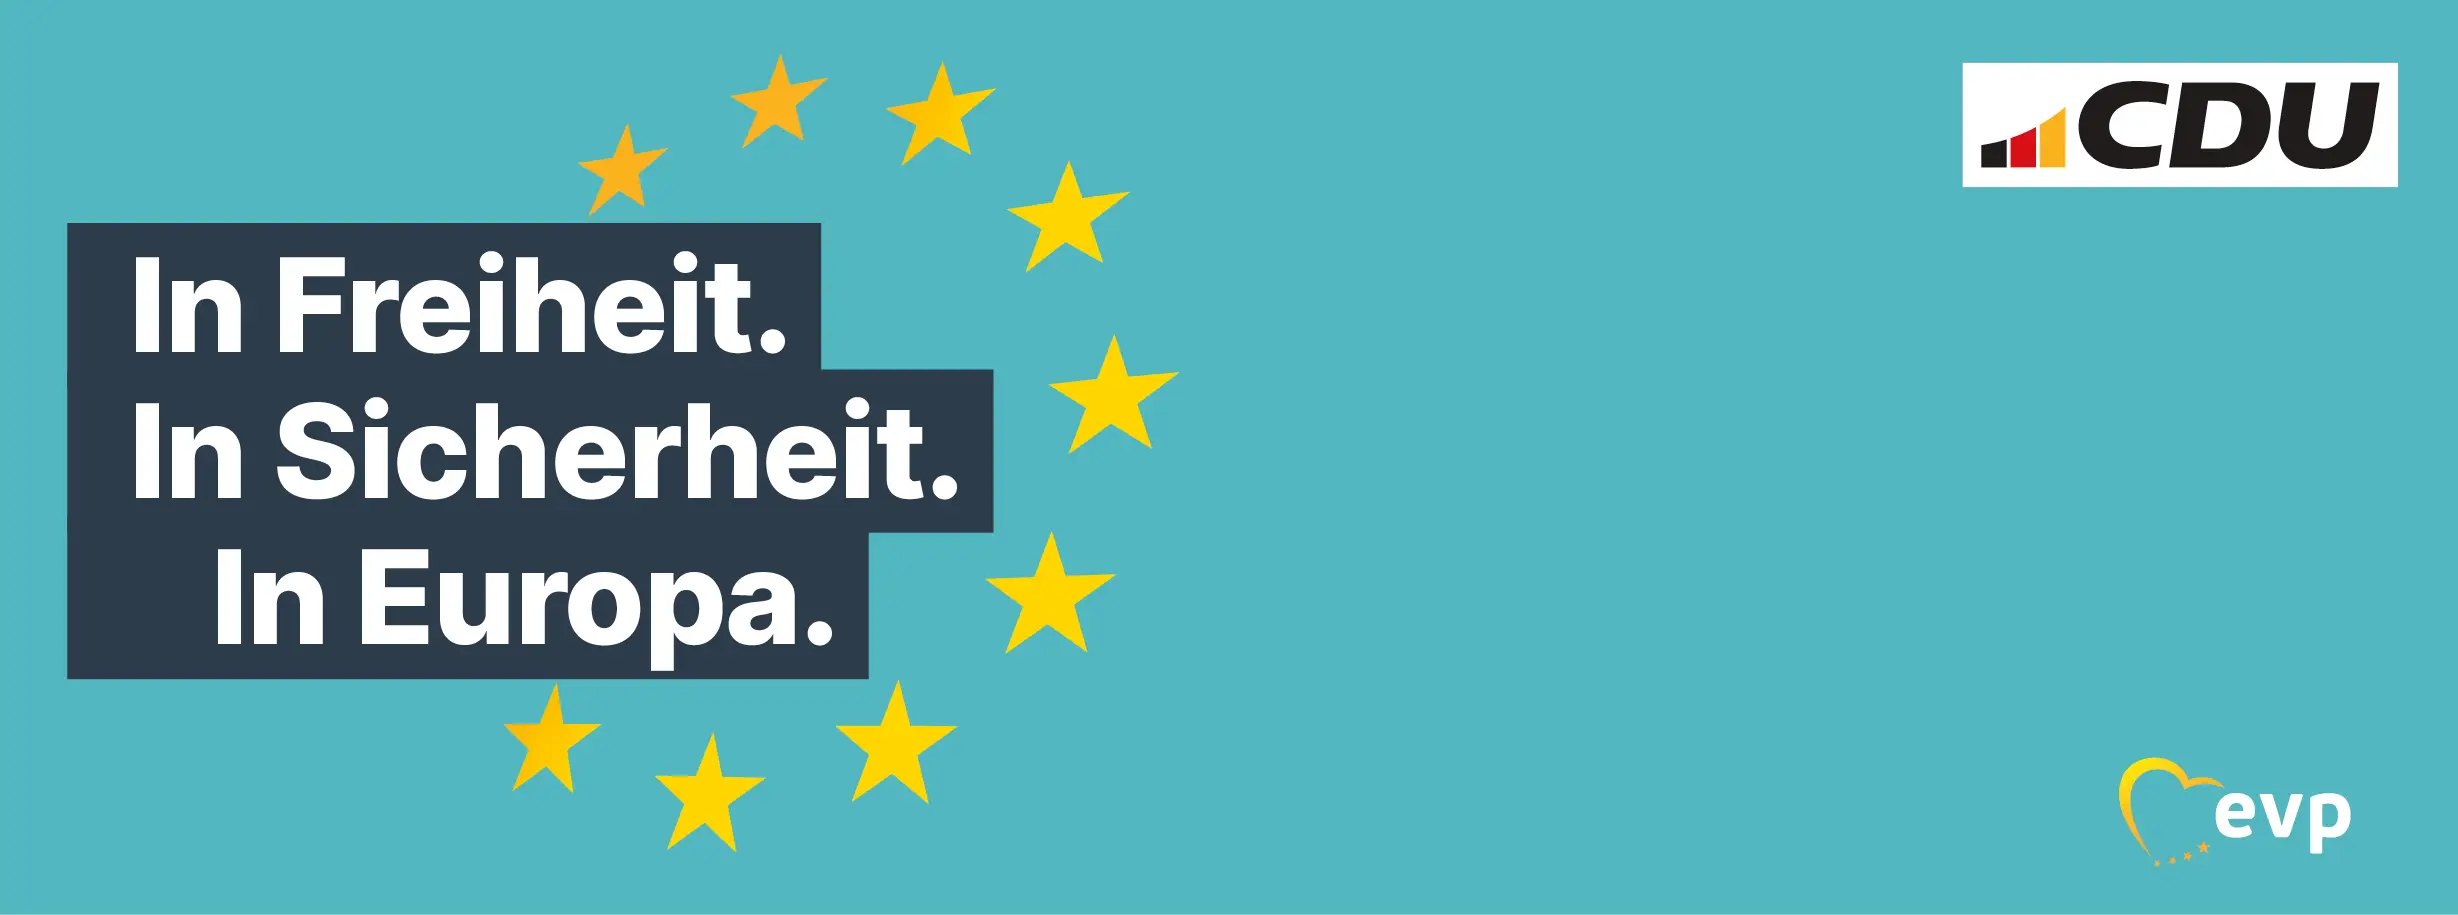 cdu-grüner Hintergrund, CDU Logo, Text: In Freiheit. In Sicherheit. In Europa, Eurosterne und das EVP-Logo 